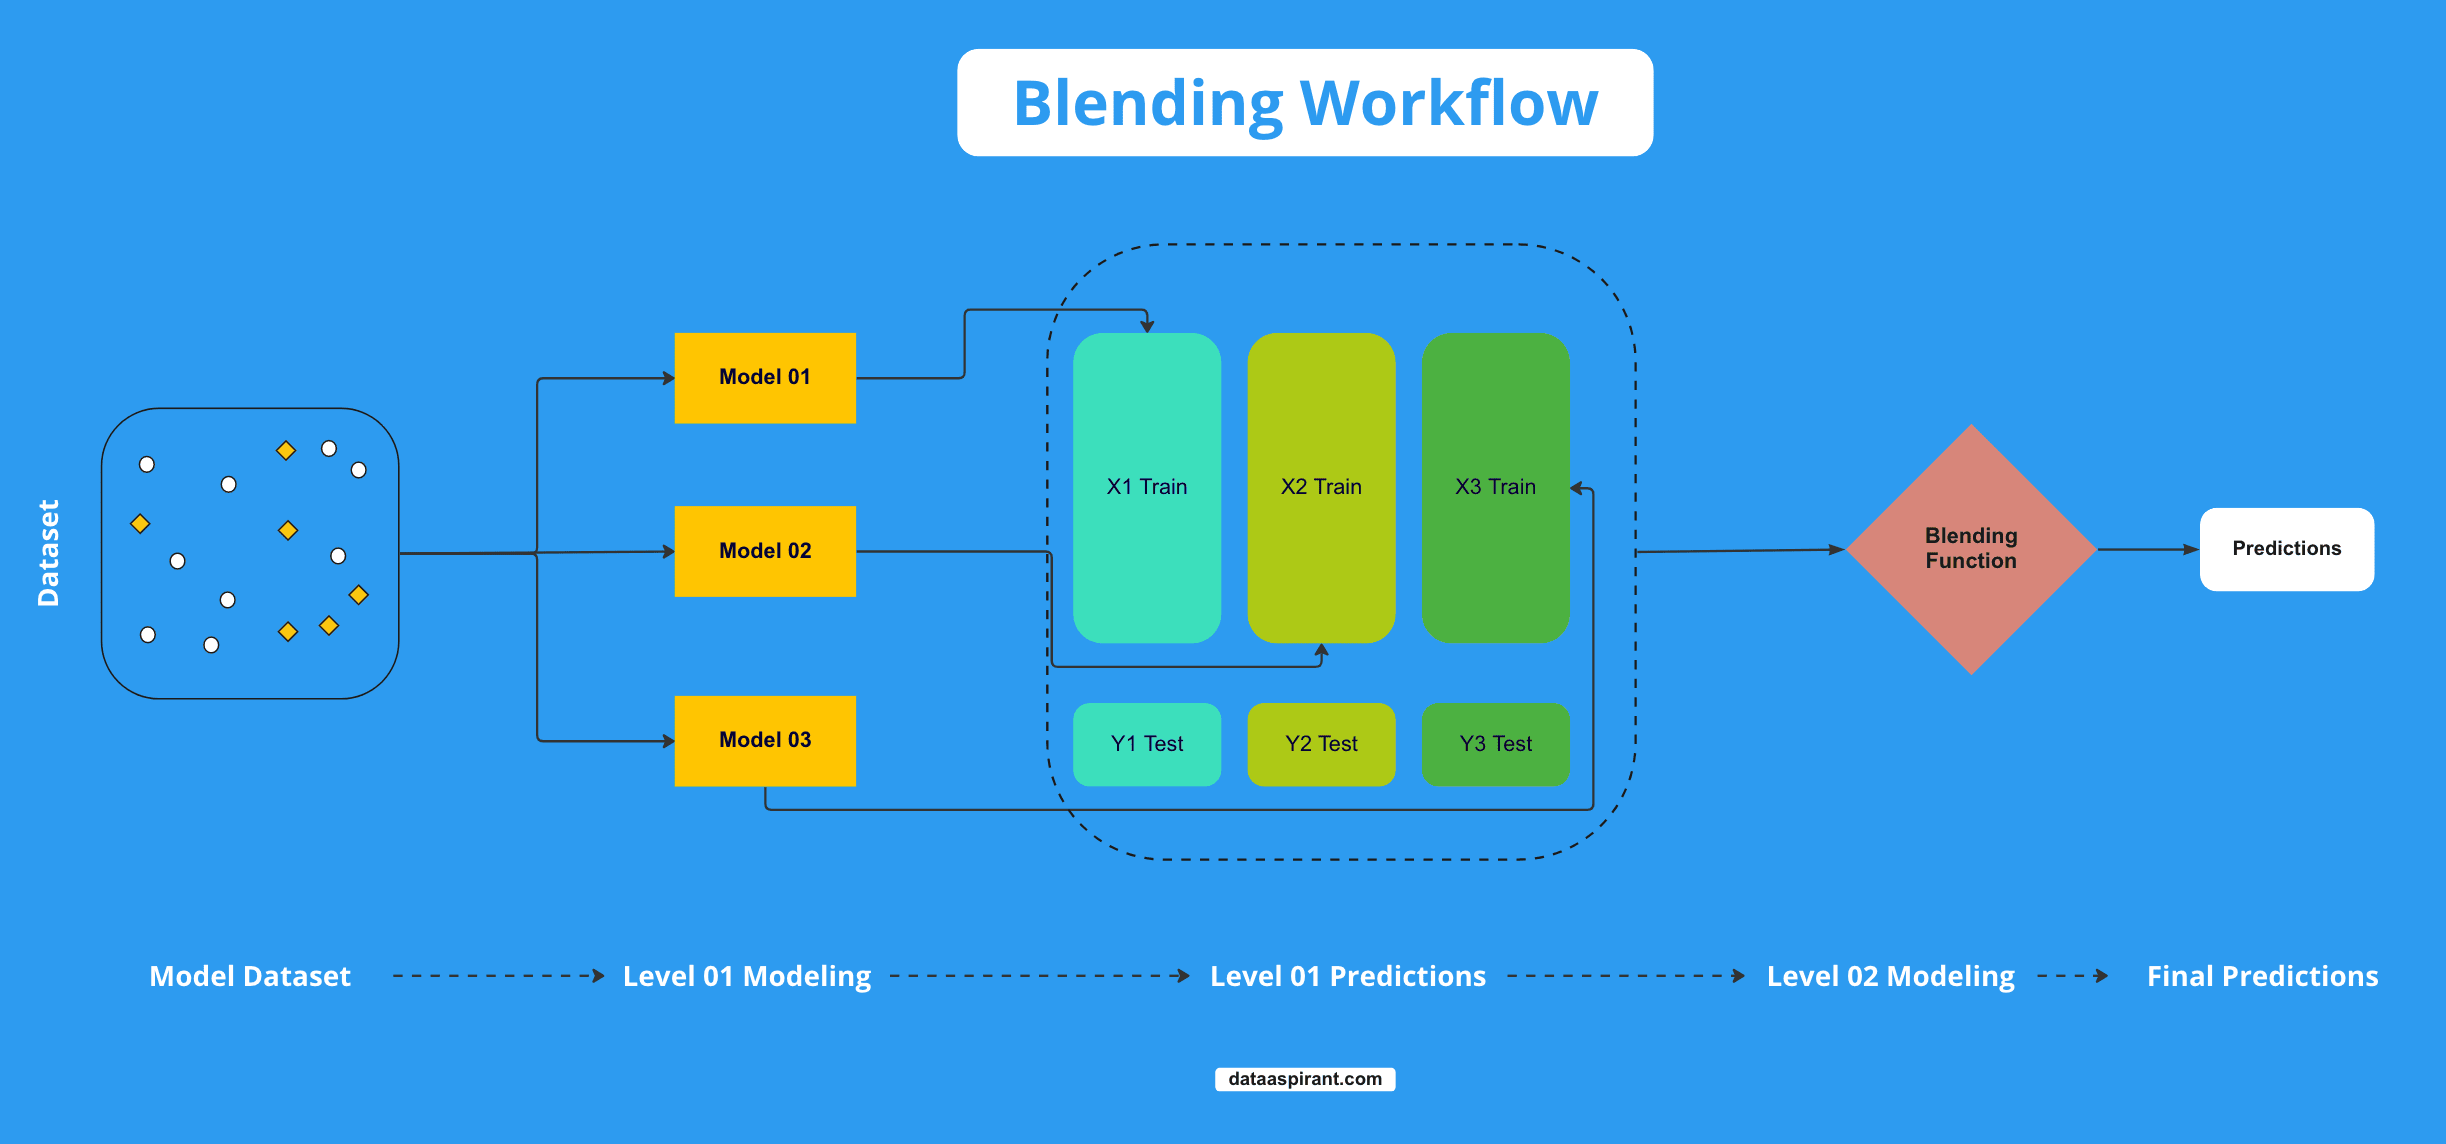 Blending Workflow